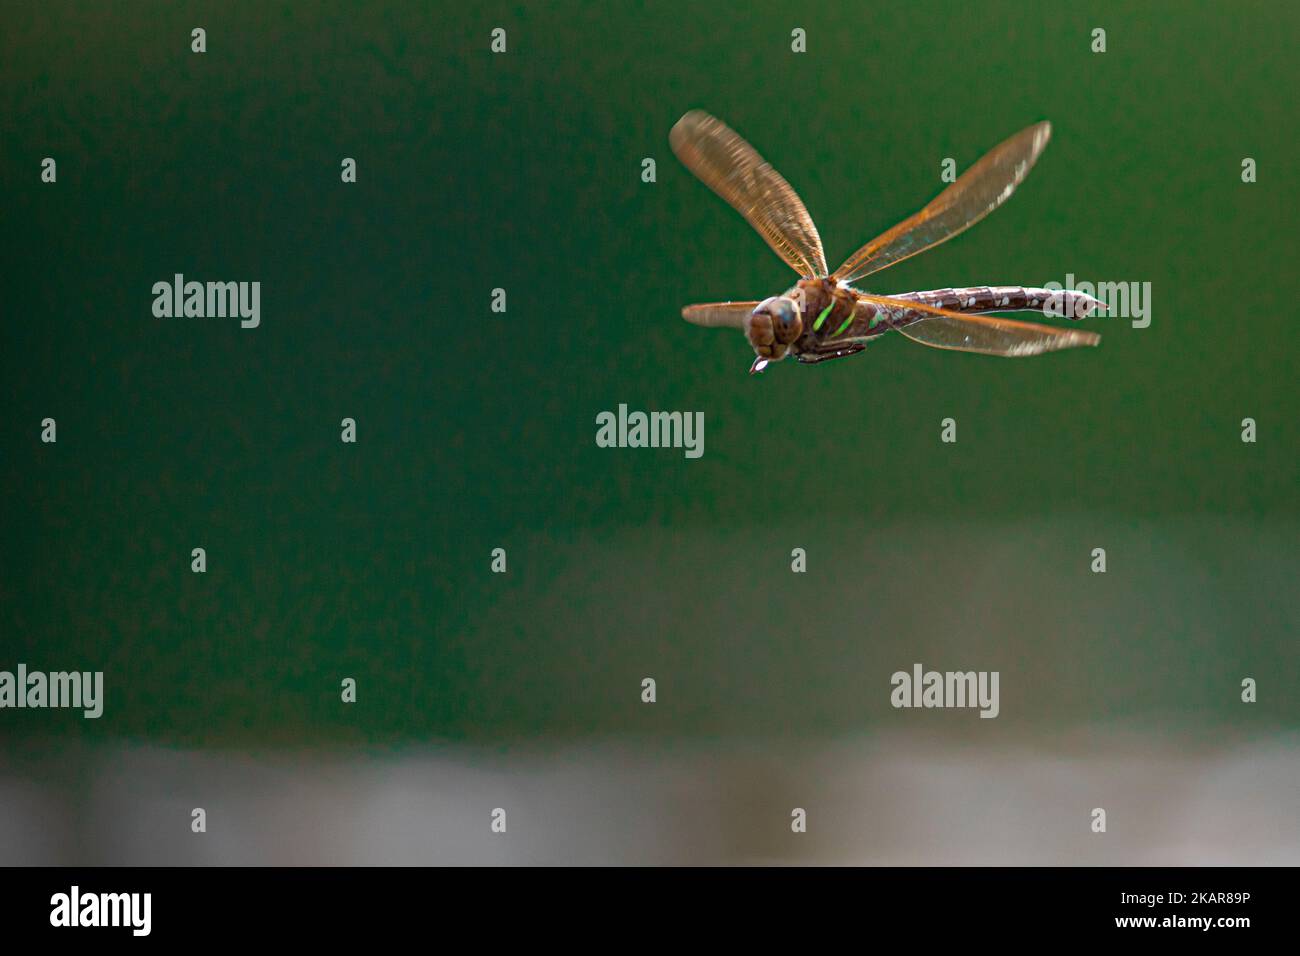 Fliegende Libelle in der Luft (Odenata). Ein Insekt aus Norwegen. Sieht aus wie ein Hubschrauber. Das Insekt fliegt nahe am Wasser und legt die Eier ab. Stockfoto